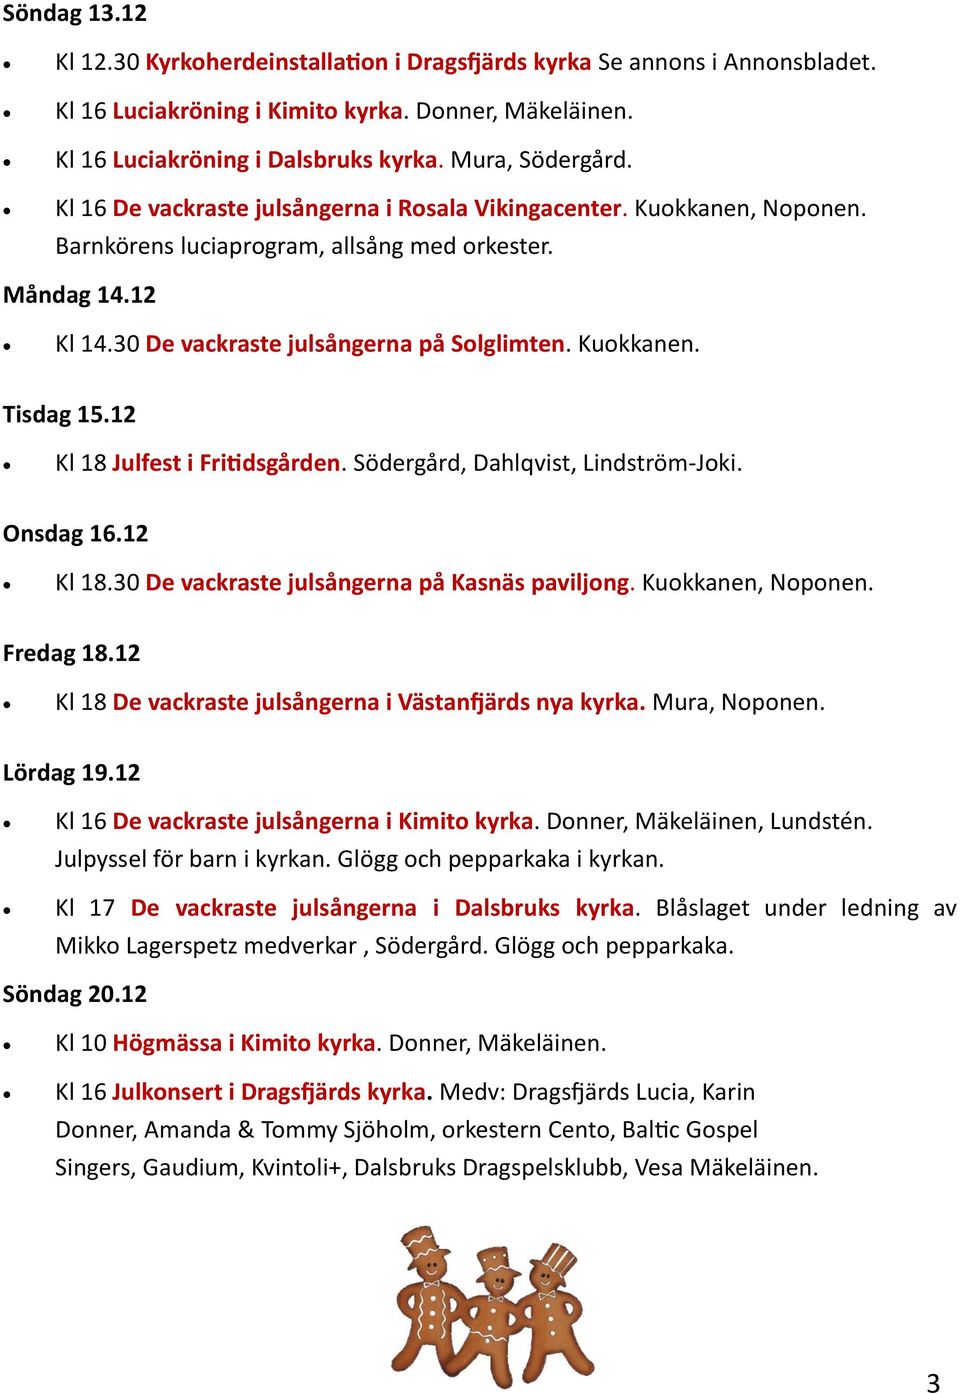 12 Kl 18 Julfest i Fritidsgården. Södergård, Dahlqvist, Lindström-Joki. Onsdag 16.12 Kl 18.30 De vackraste julsångerna på Kasnäs paviljong. Kuokkanen, Noponen. Fredag 18.